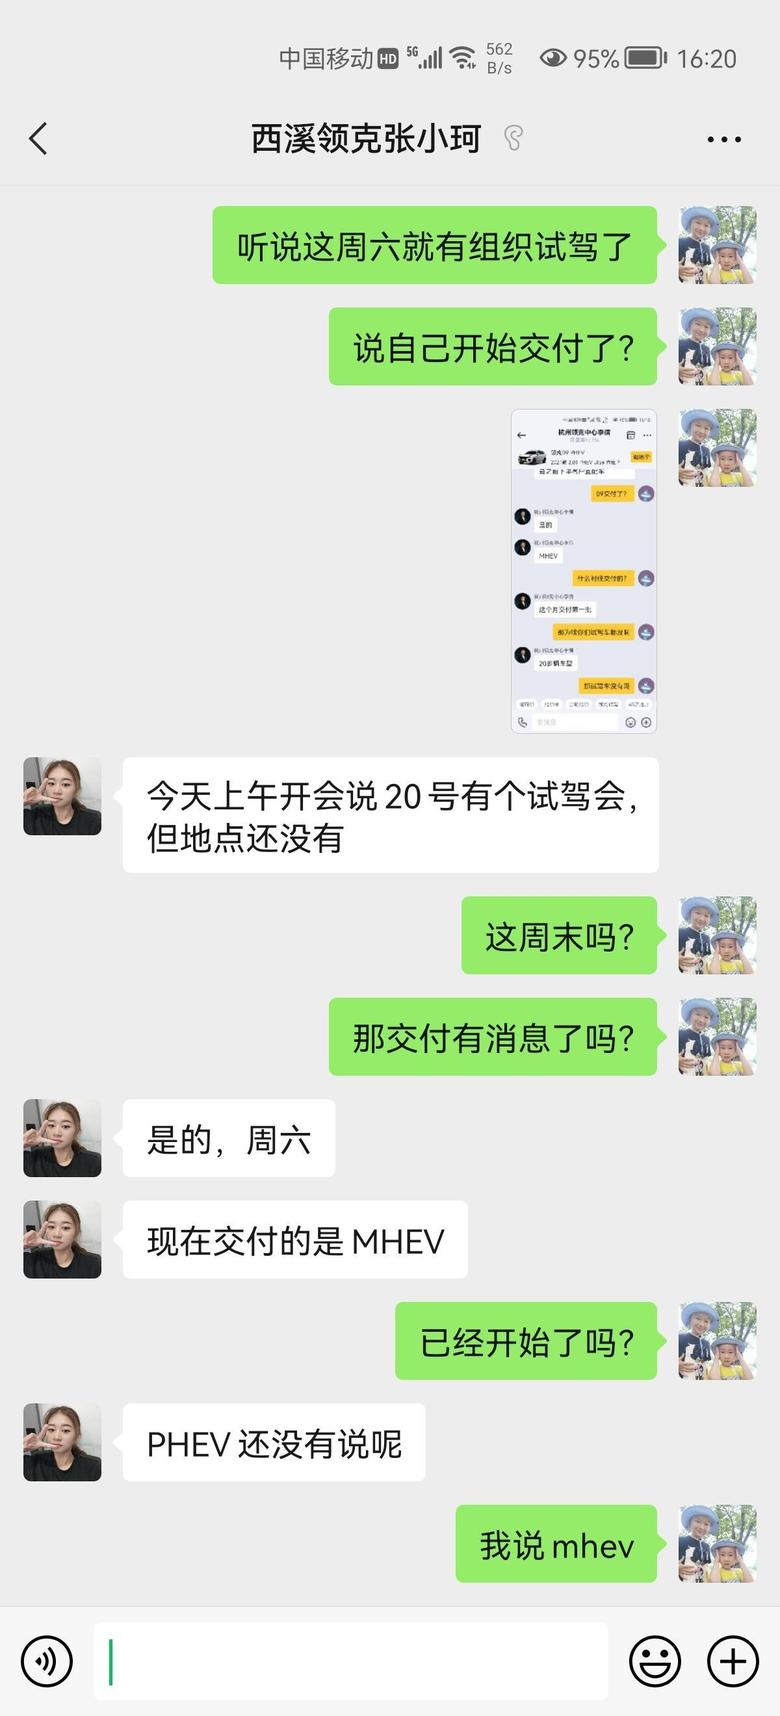 领克09 phev ?等车日记听4s店的销售说杭州mhev已经开始交付了，这个月20号有个试驾会。